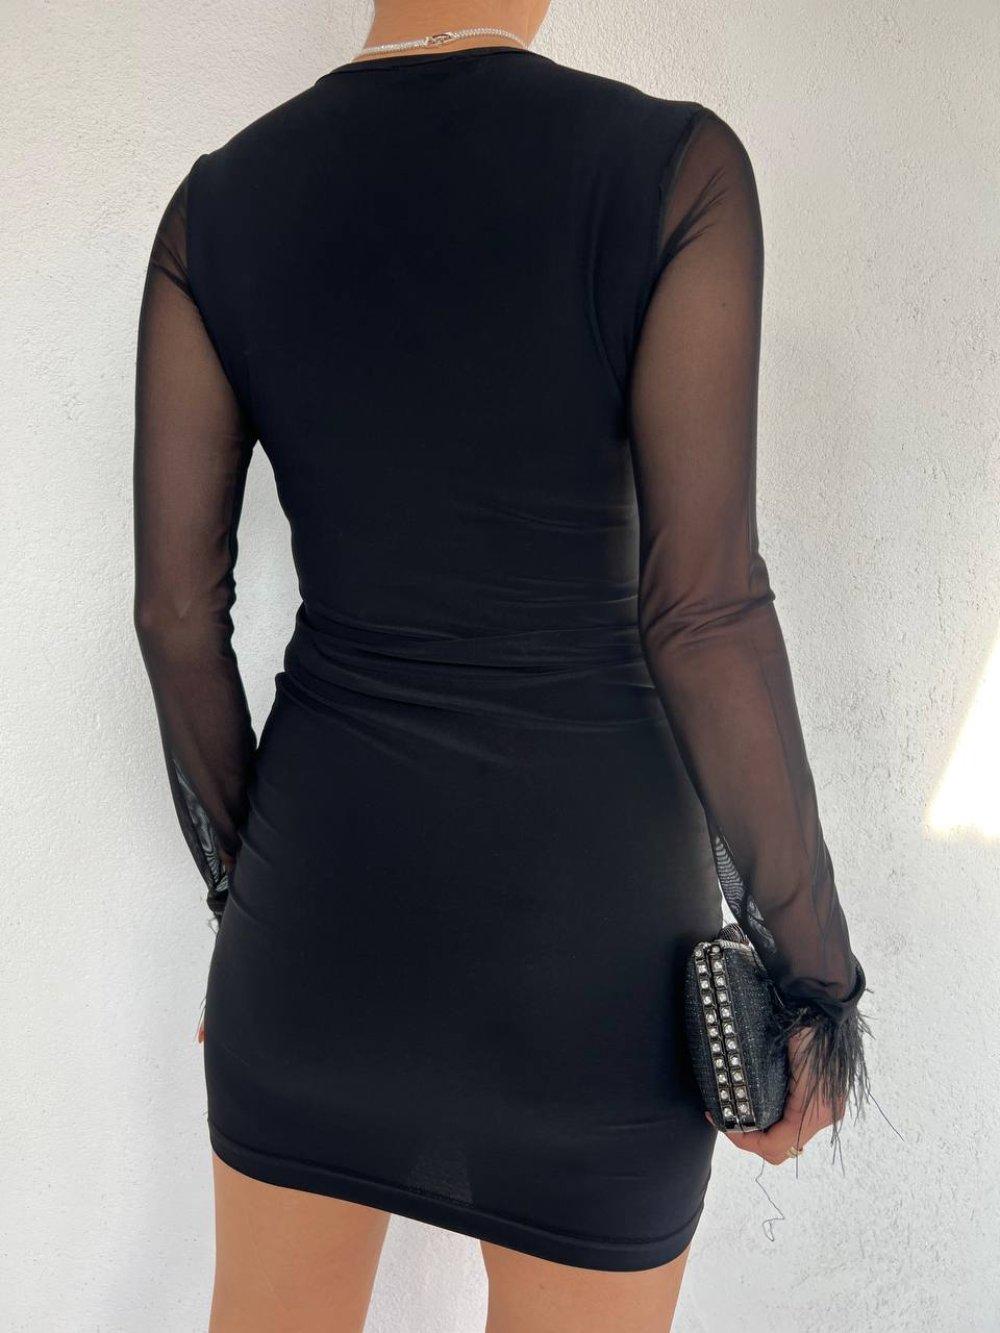 Sandy Kol Ağzı Tüylü Elbise 10193 Siyah